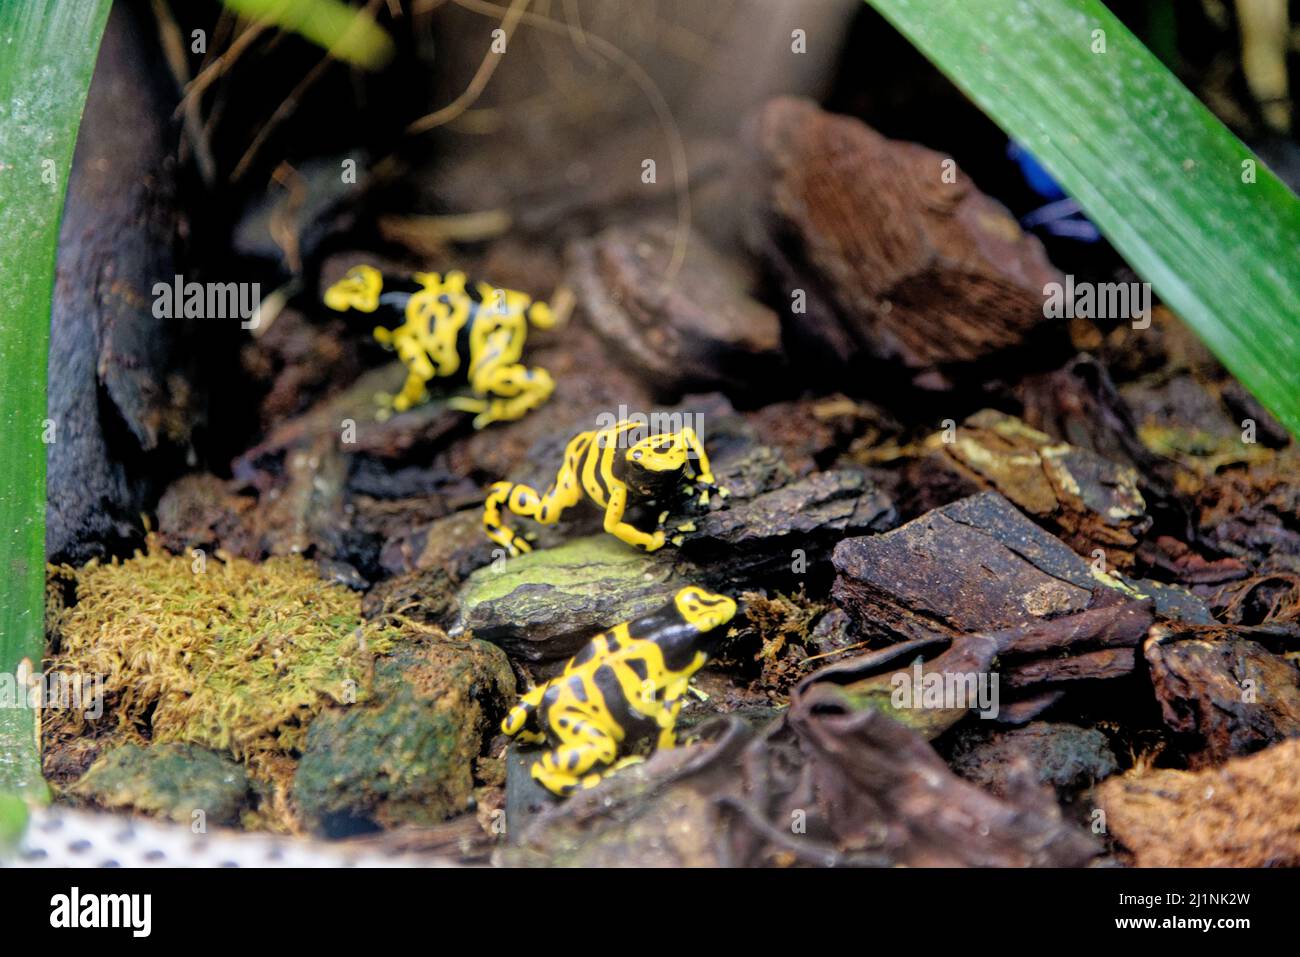 Rana velena gialla a bande gialle o a testa gialla (Dendrobates leucomelas), nota anche come rana velena di Bumblebee. Acquario di Genova, Liguri Foto Stock